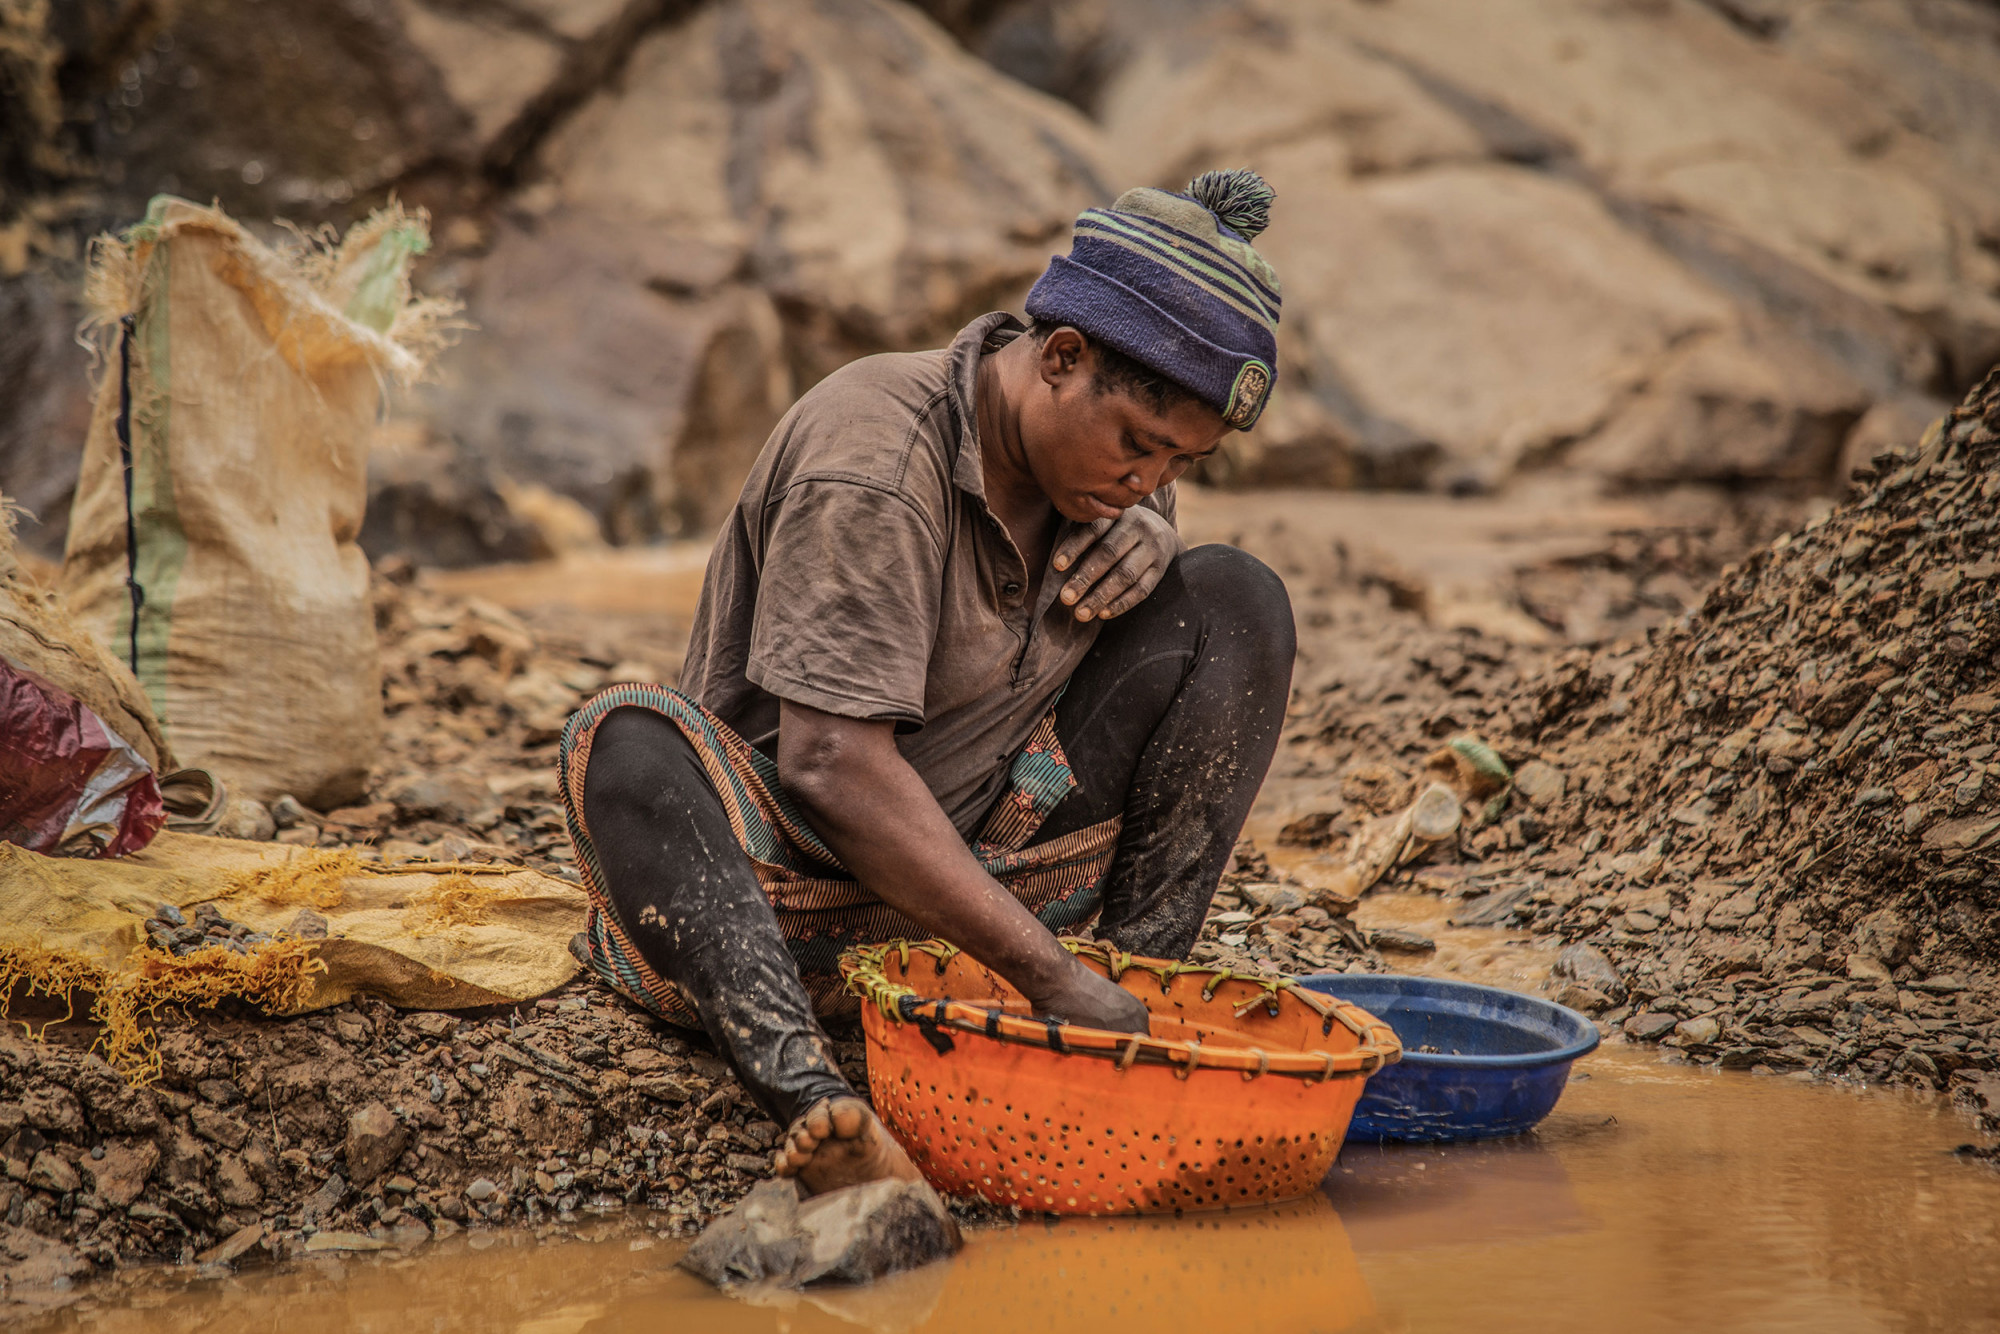 Province du Sud-Kivu, mars 2021. Un enfant au travail dans une mine d’or artisanale de Kamituga. © Moses Sawasawa pour la Fondation Carmignac